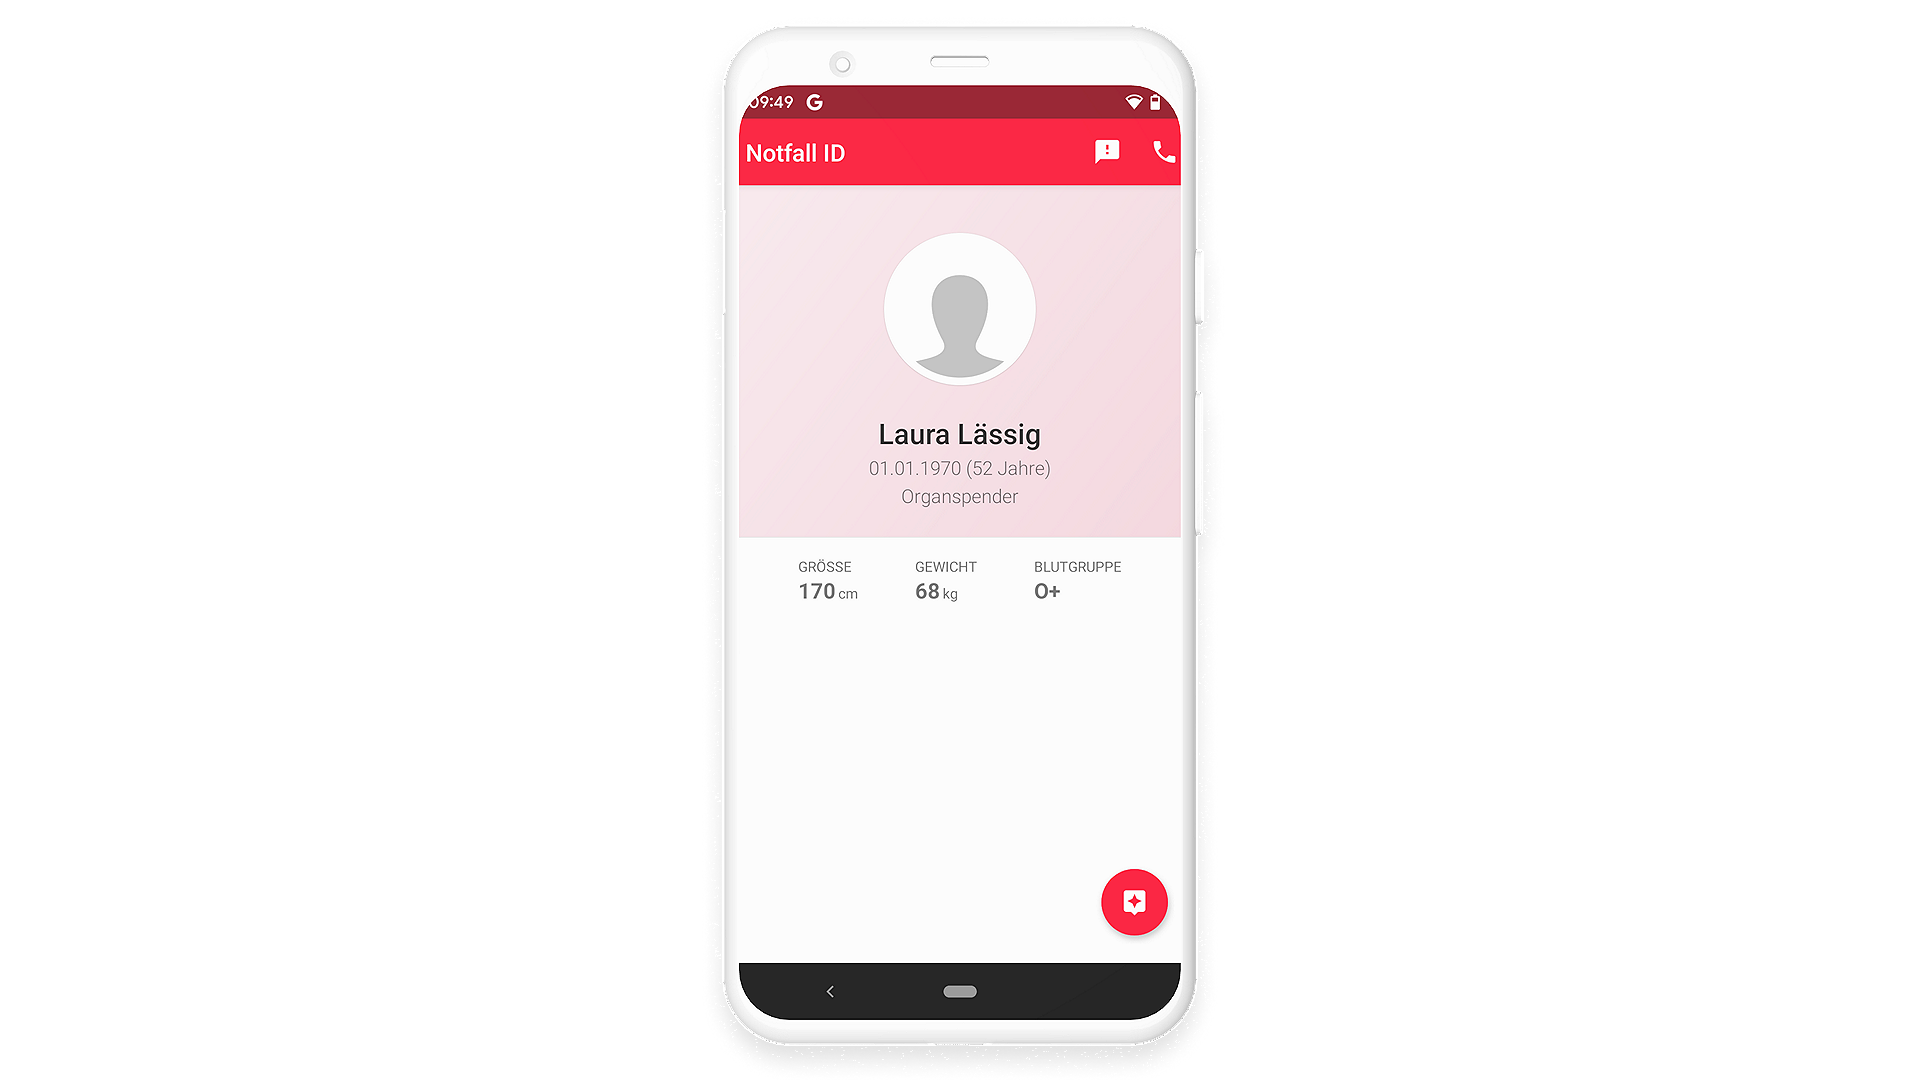 Profil mit medizinischen Daten anlegen in der Handy-App Notfall-ID